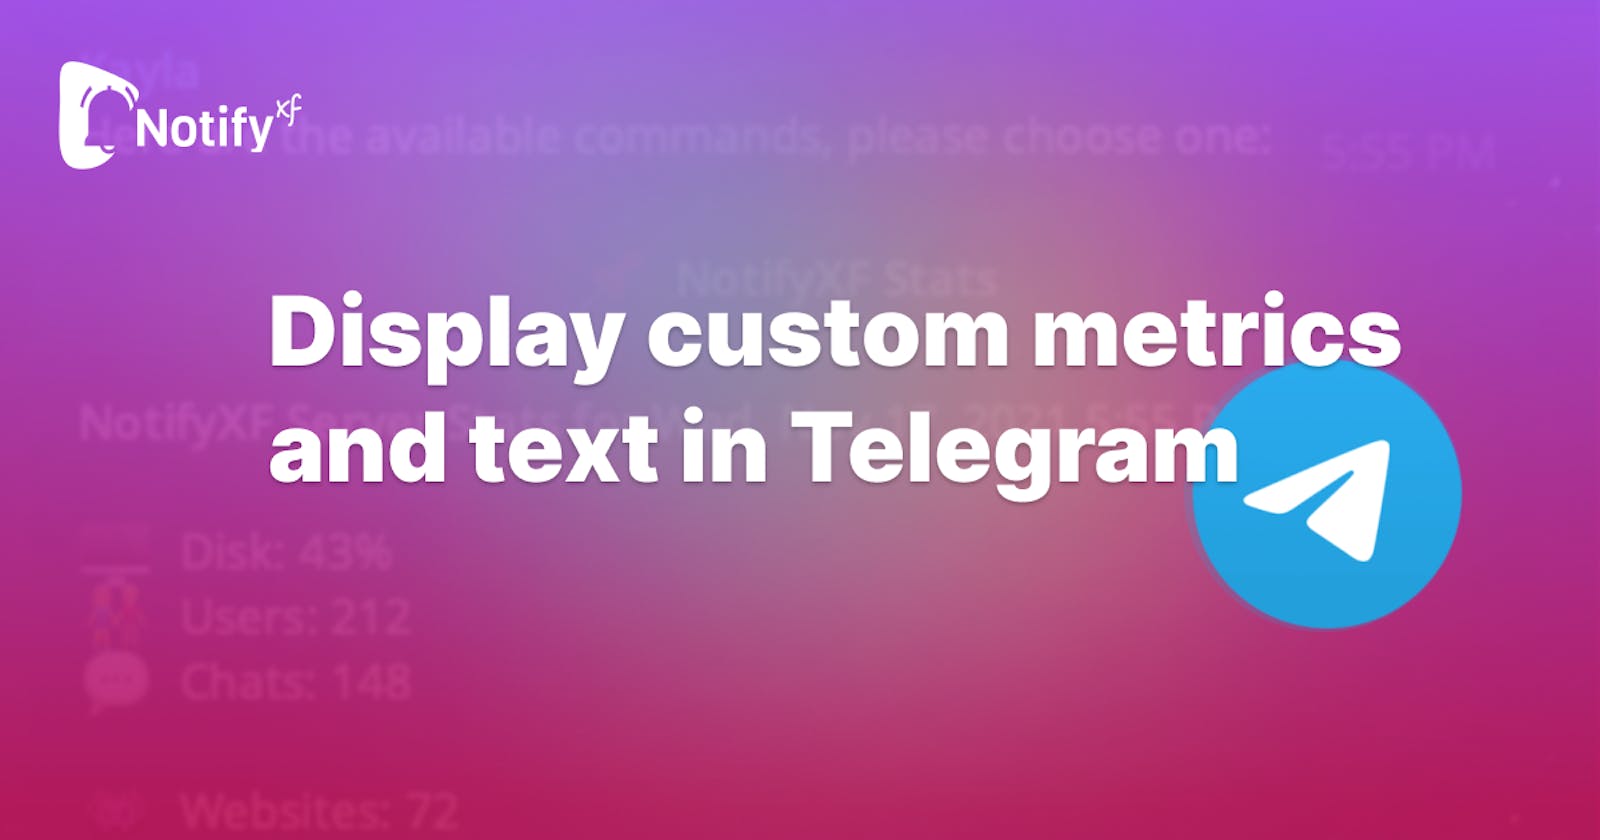 Display custom metrics and text in Telegram